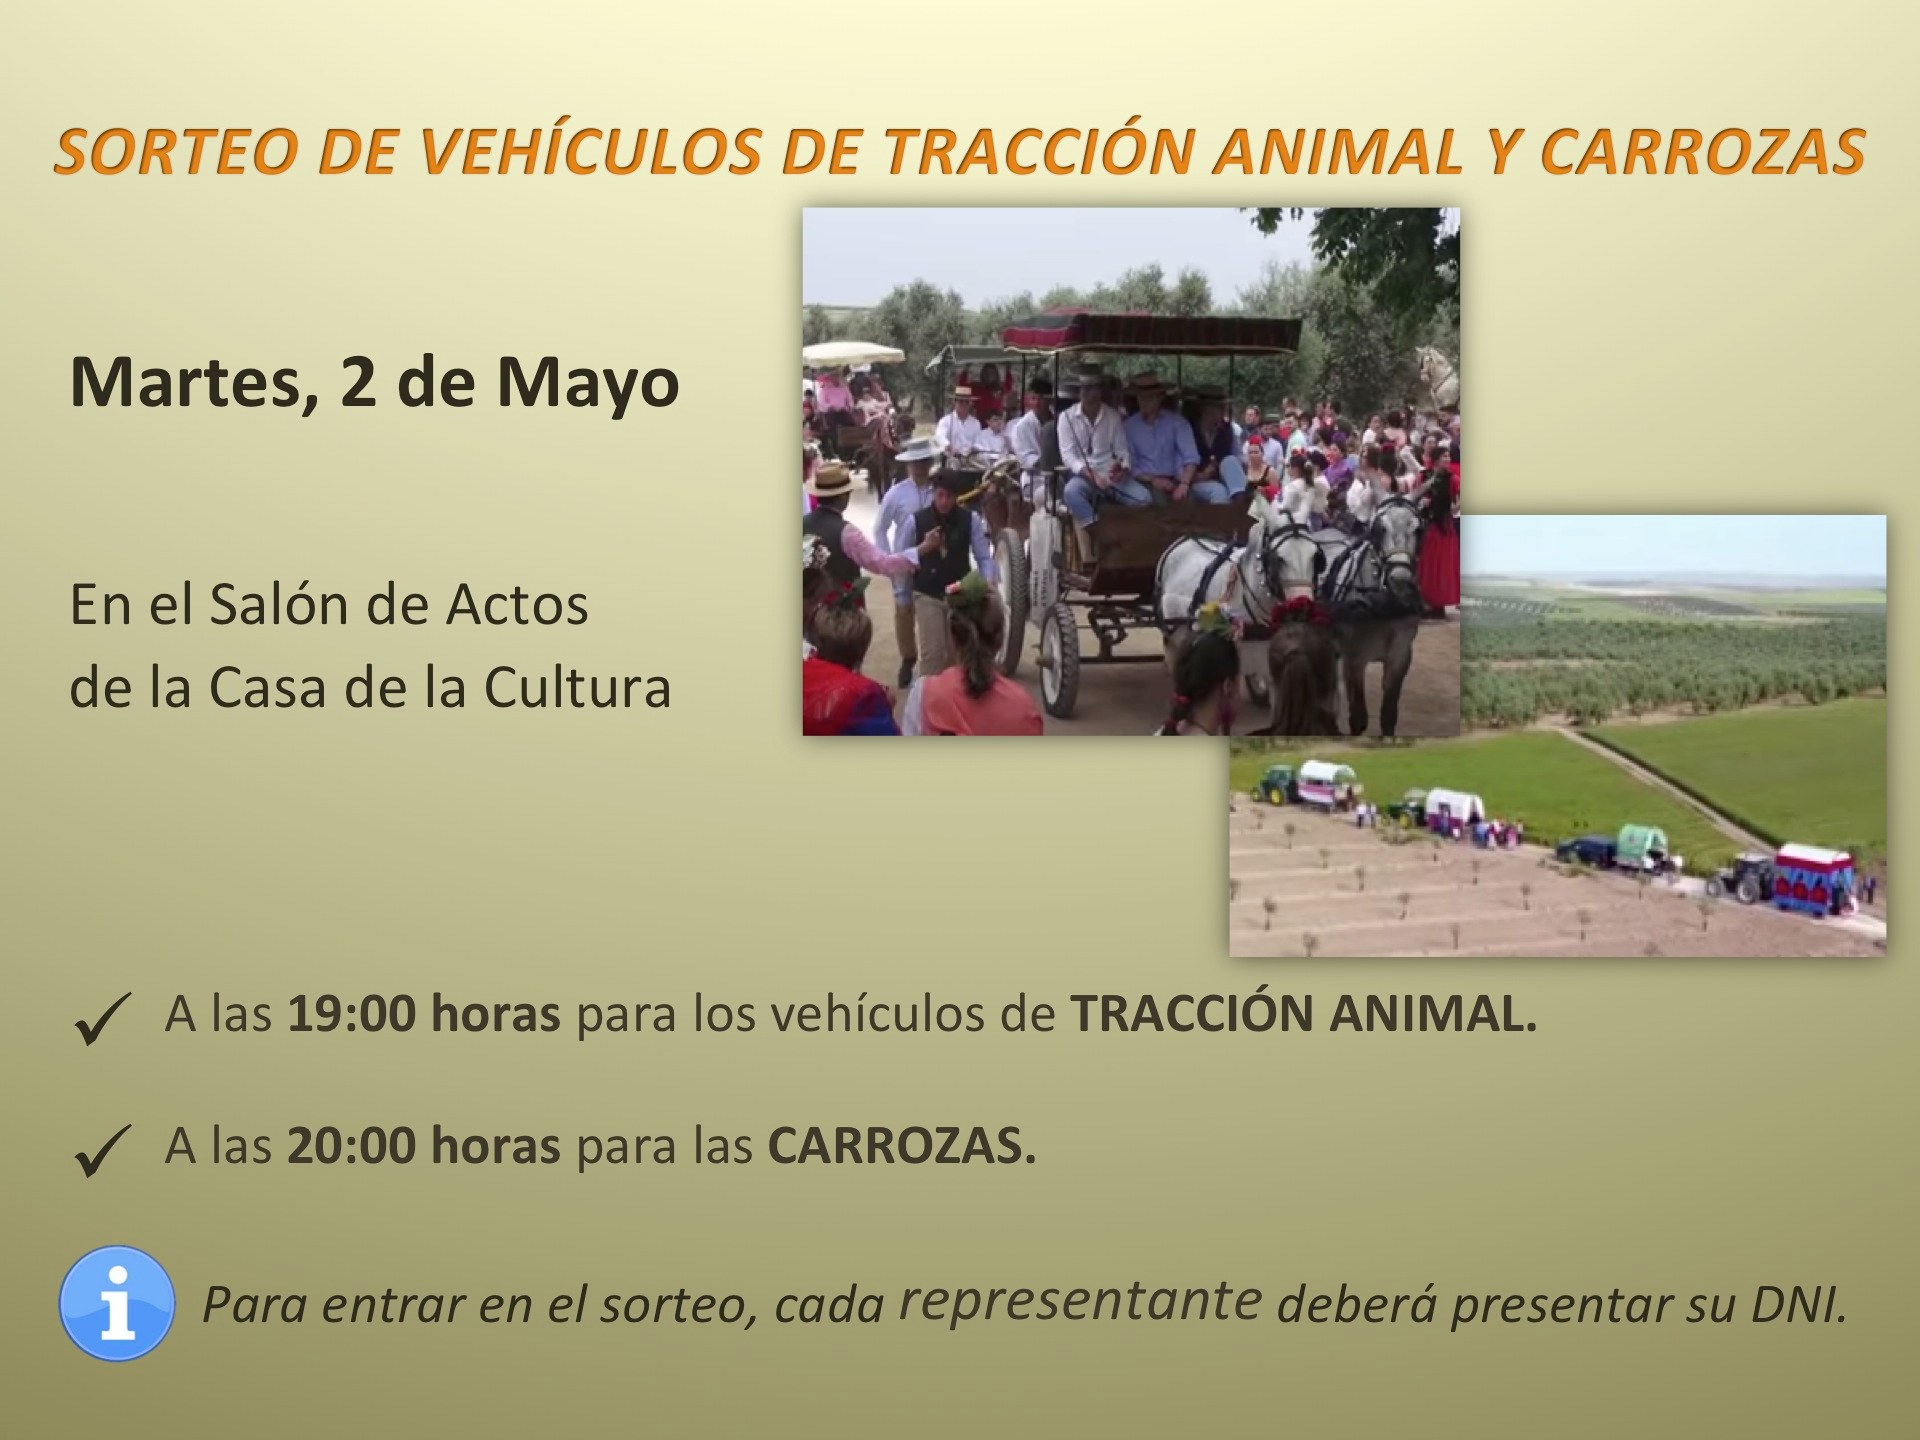 3.-SORTEO DE VEHÍCULOS DE TRACCIÓN ANIMAL Y CARROZAS